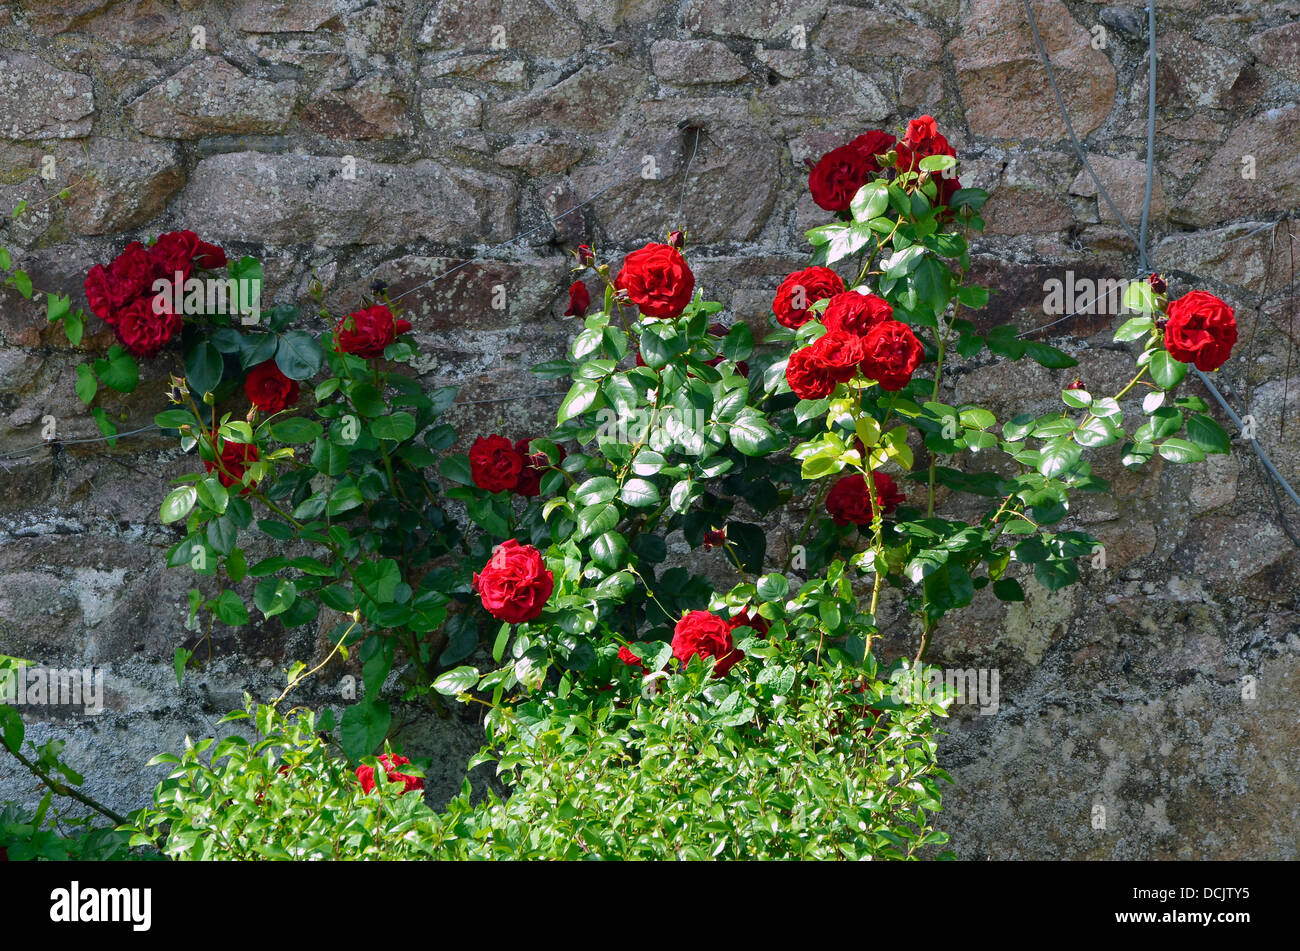 Rote Rosen gegen eine alte rote Sandstein Wand im Süden Cumbria Gebiet des Lake District. Stockfoto